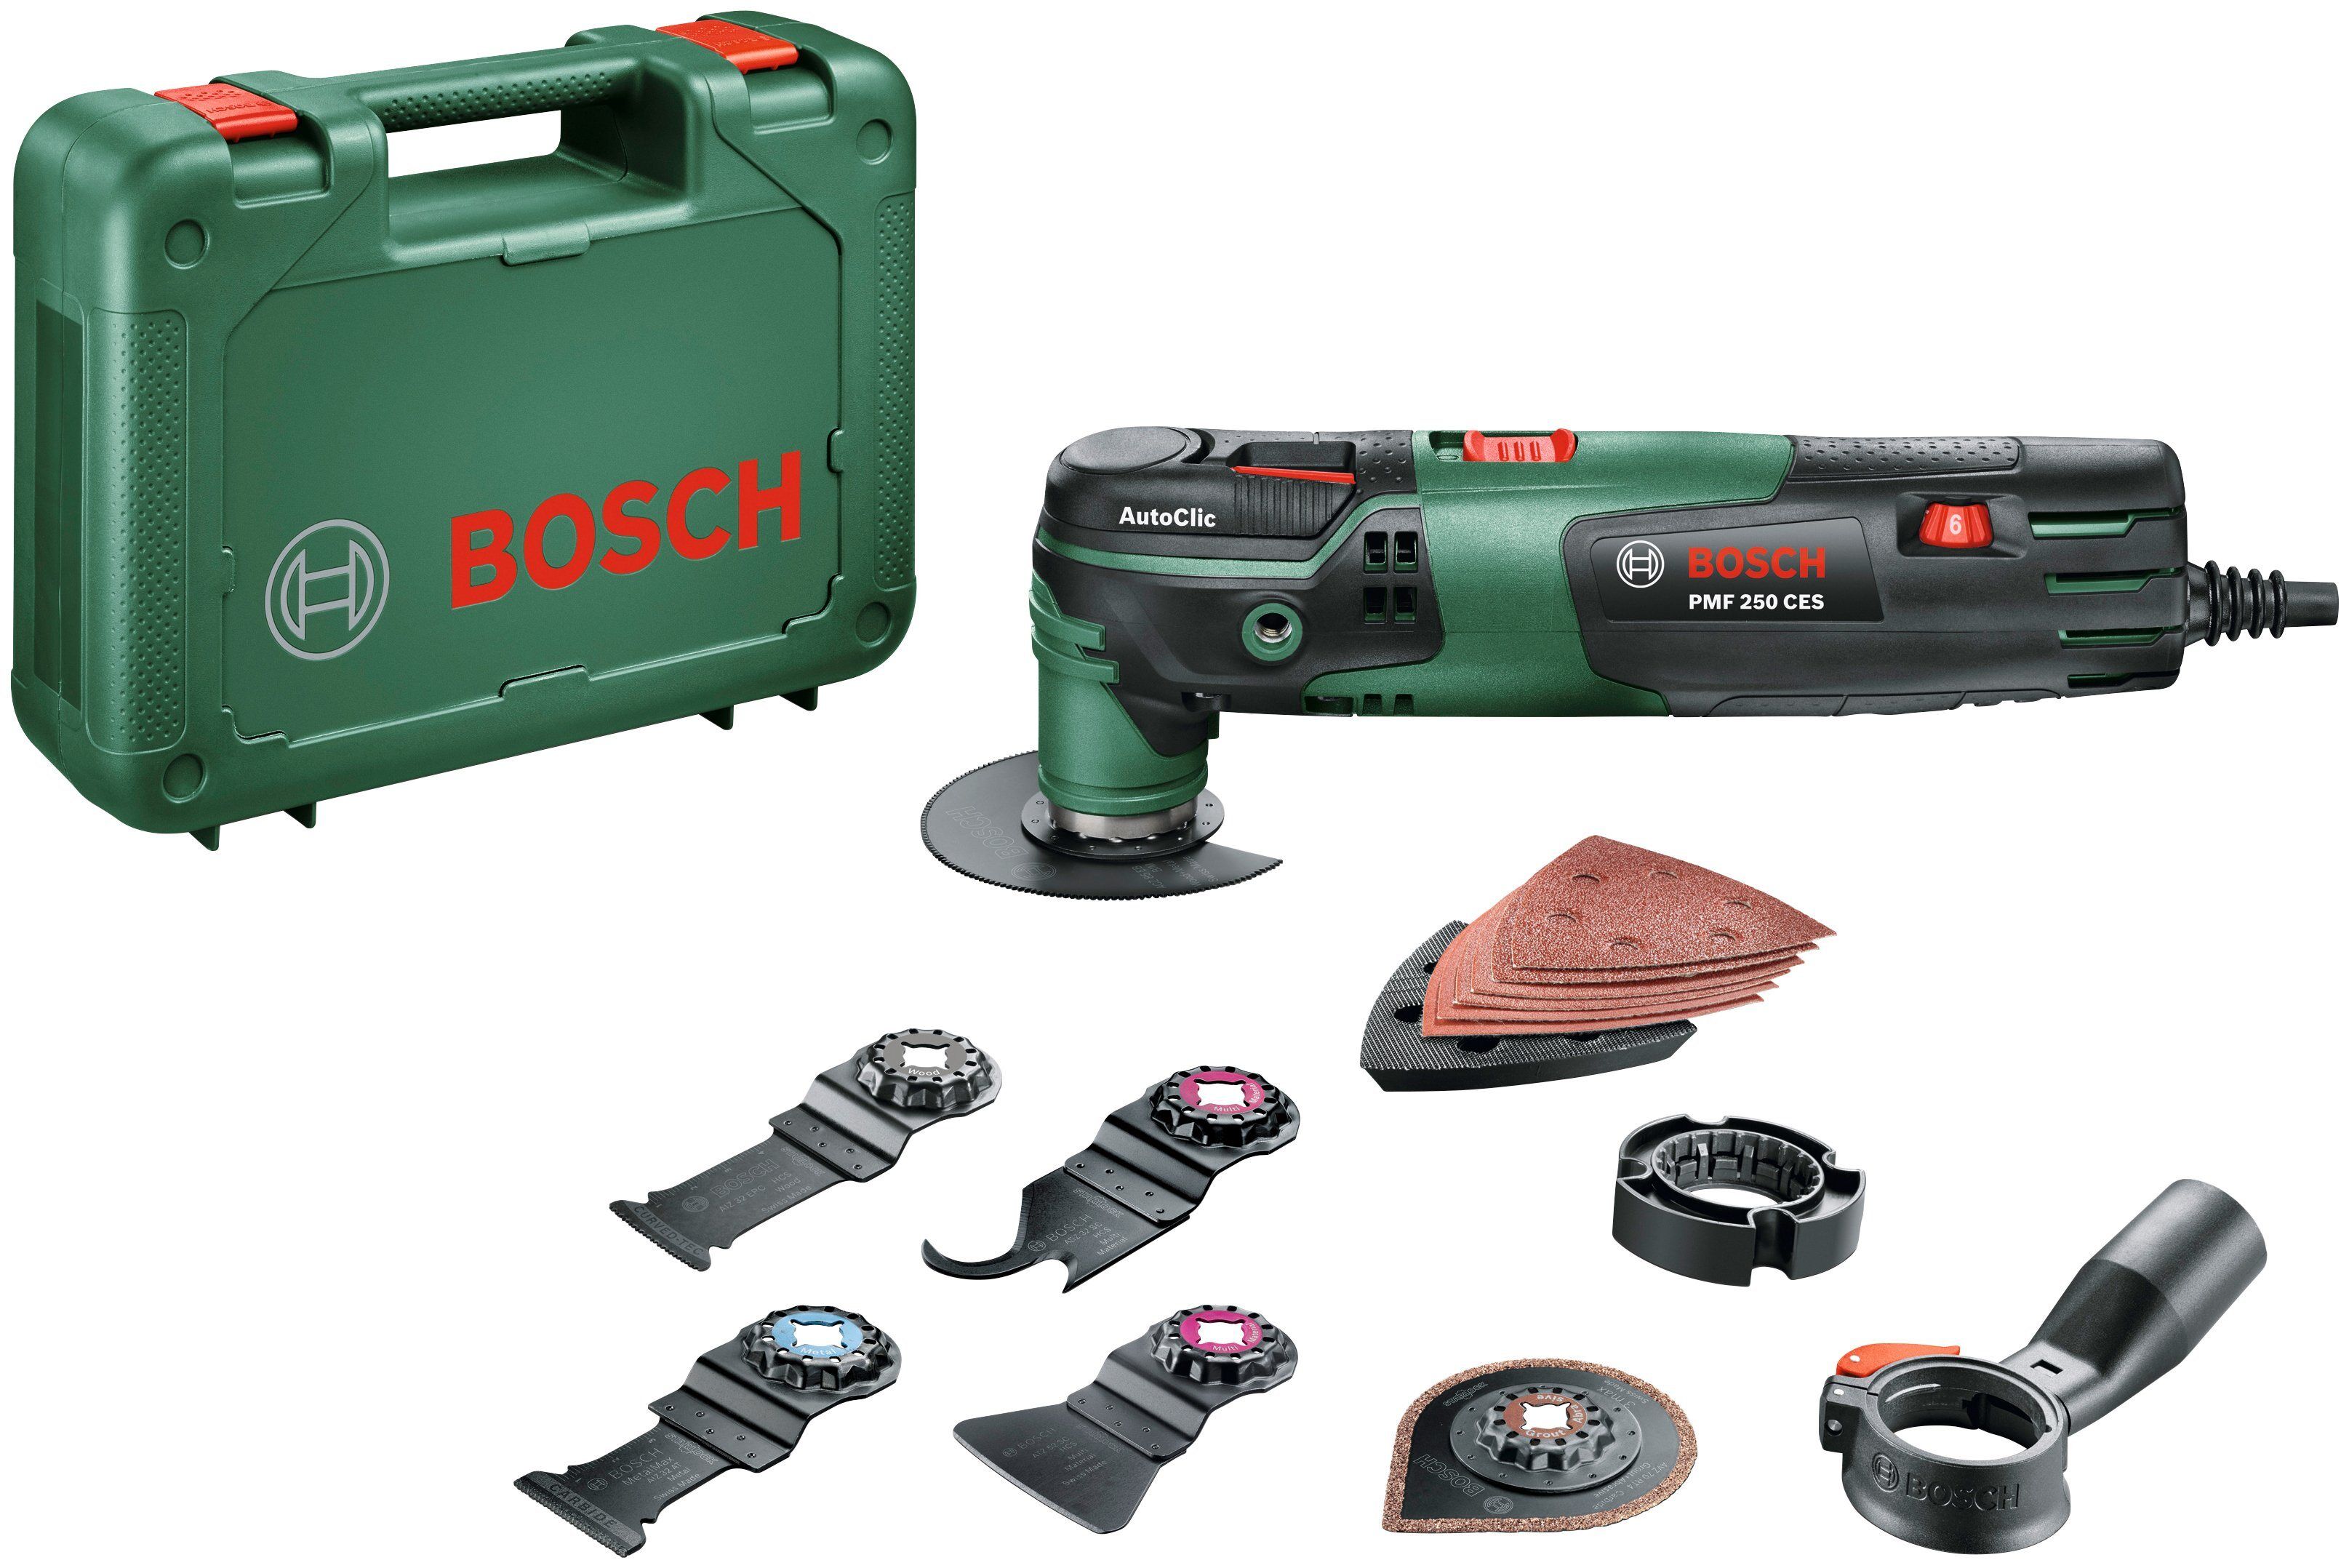 Bosch Multifunktionswerkzeug »PMF 250 CES «, grün